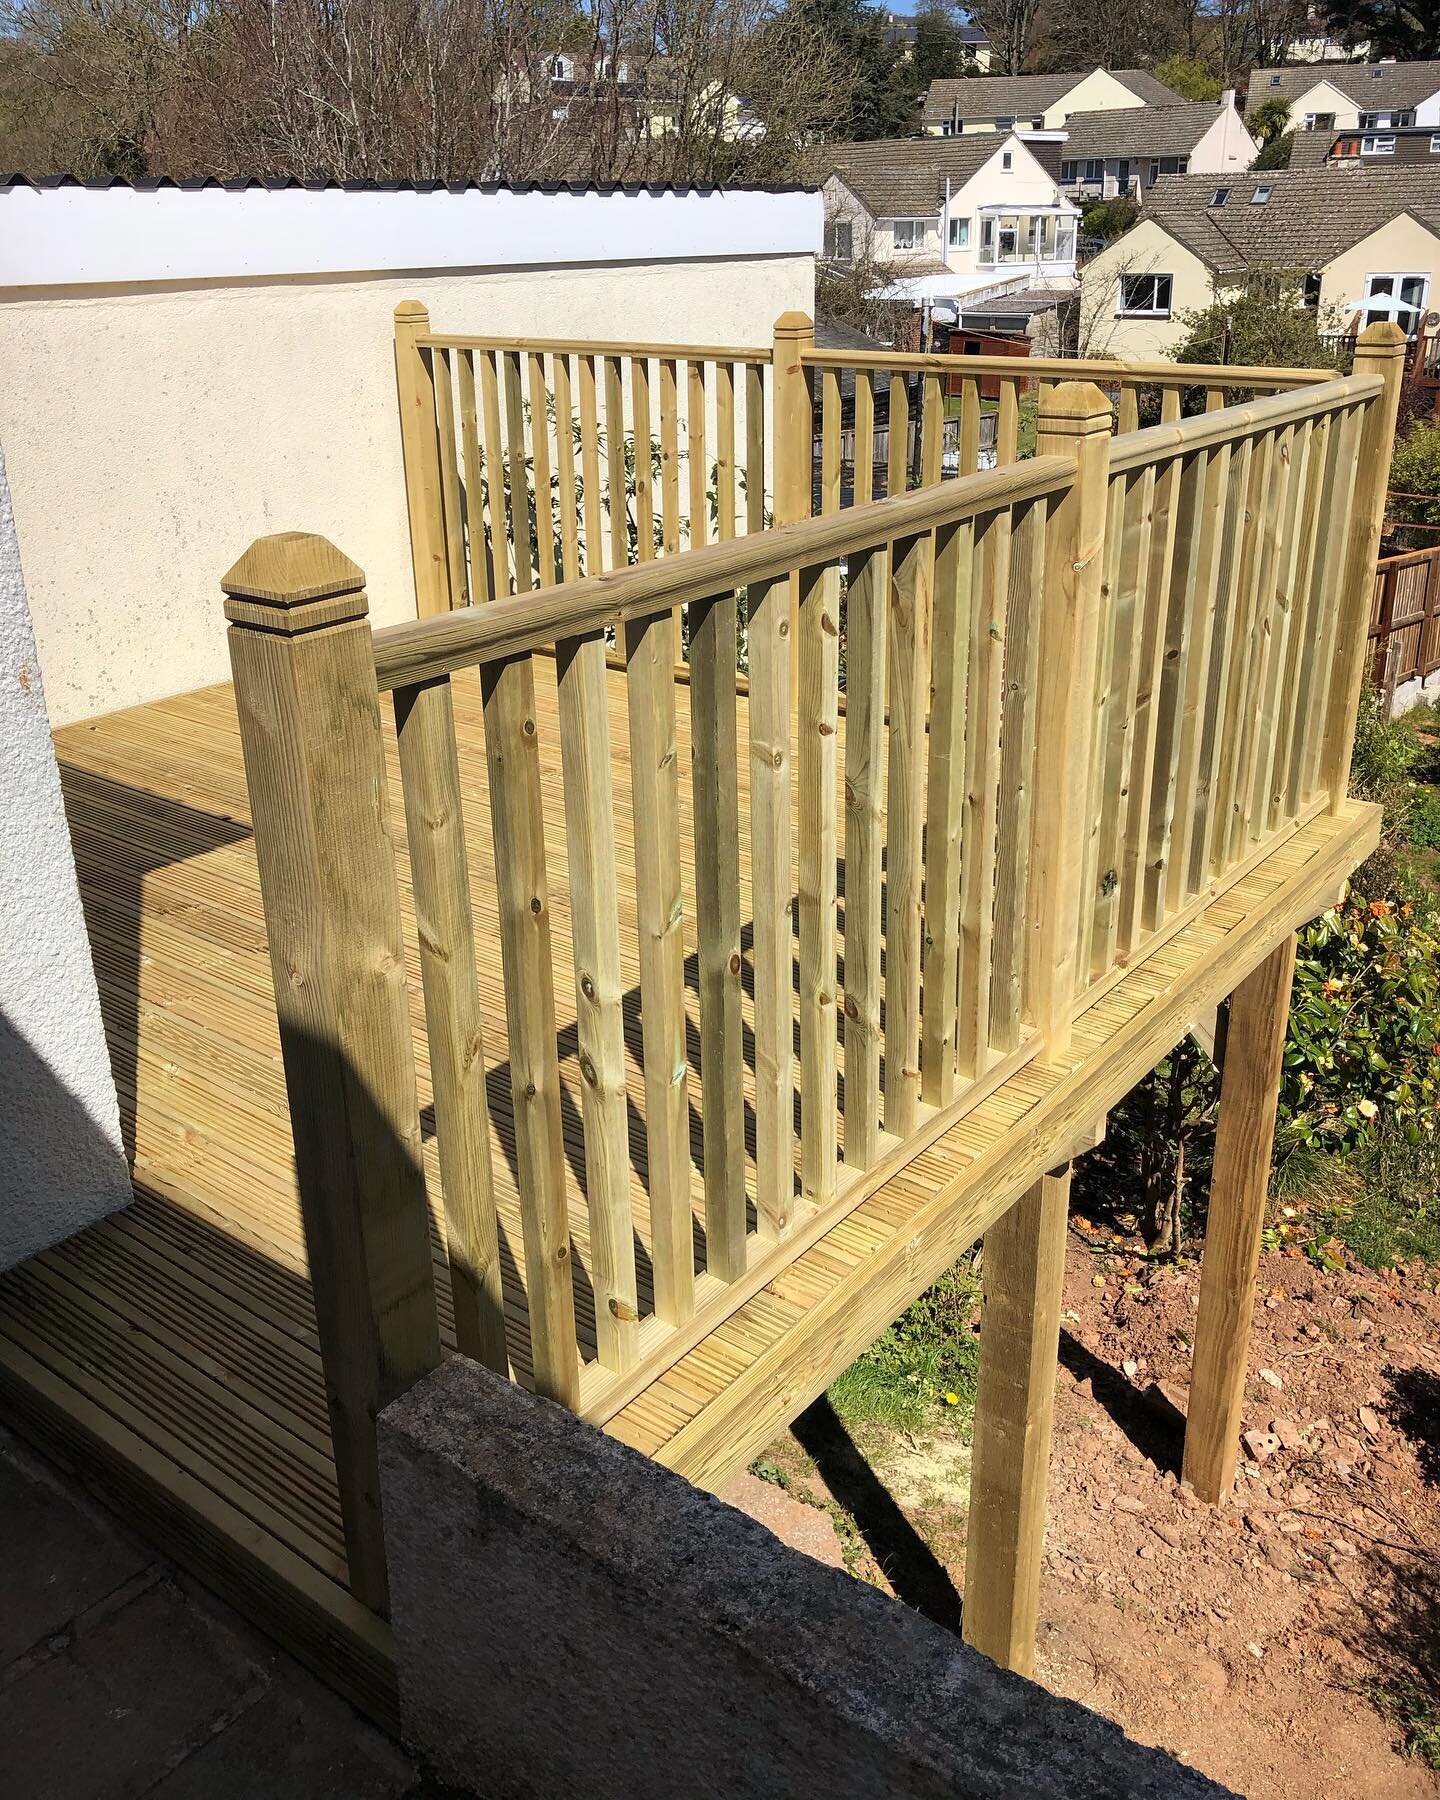 Raised decking completed with the help of @exetercarpentrysolutions . .  #decking #deck #deckingideas #raiseddeck #garden #deckdesign #carpentry #carpenter #sandrcarpentry #devon